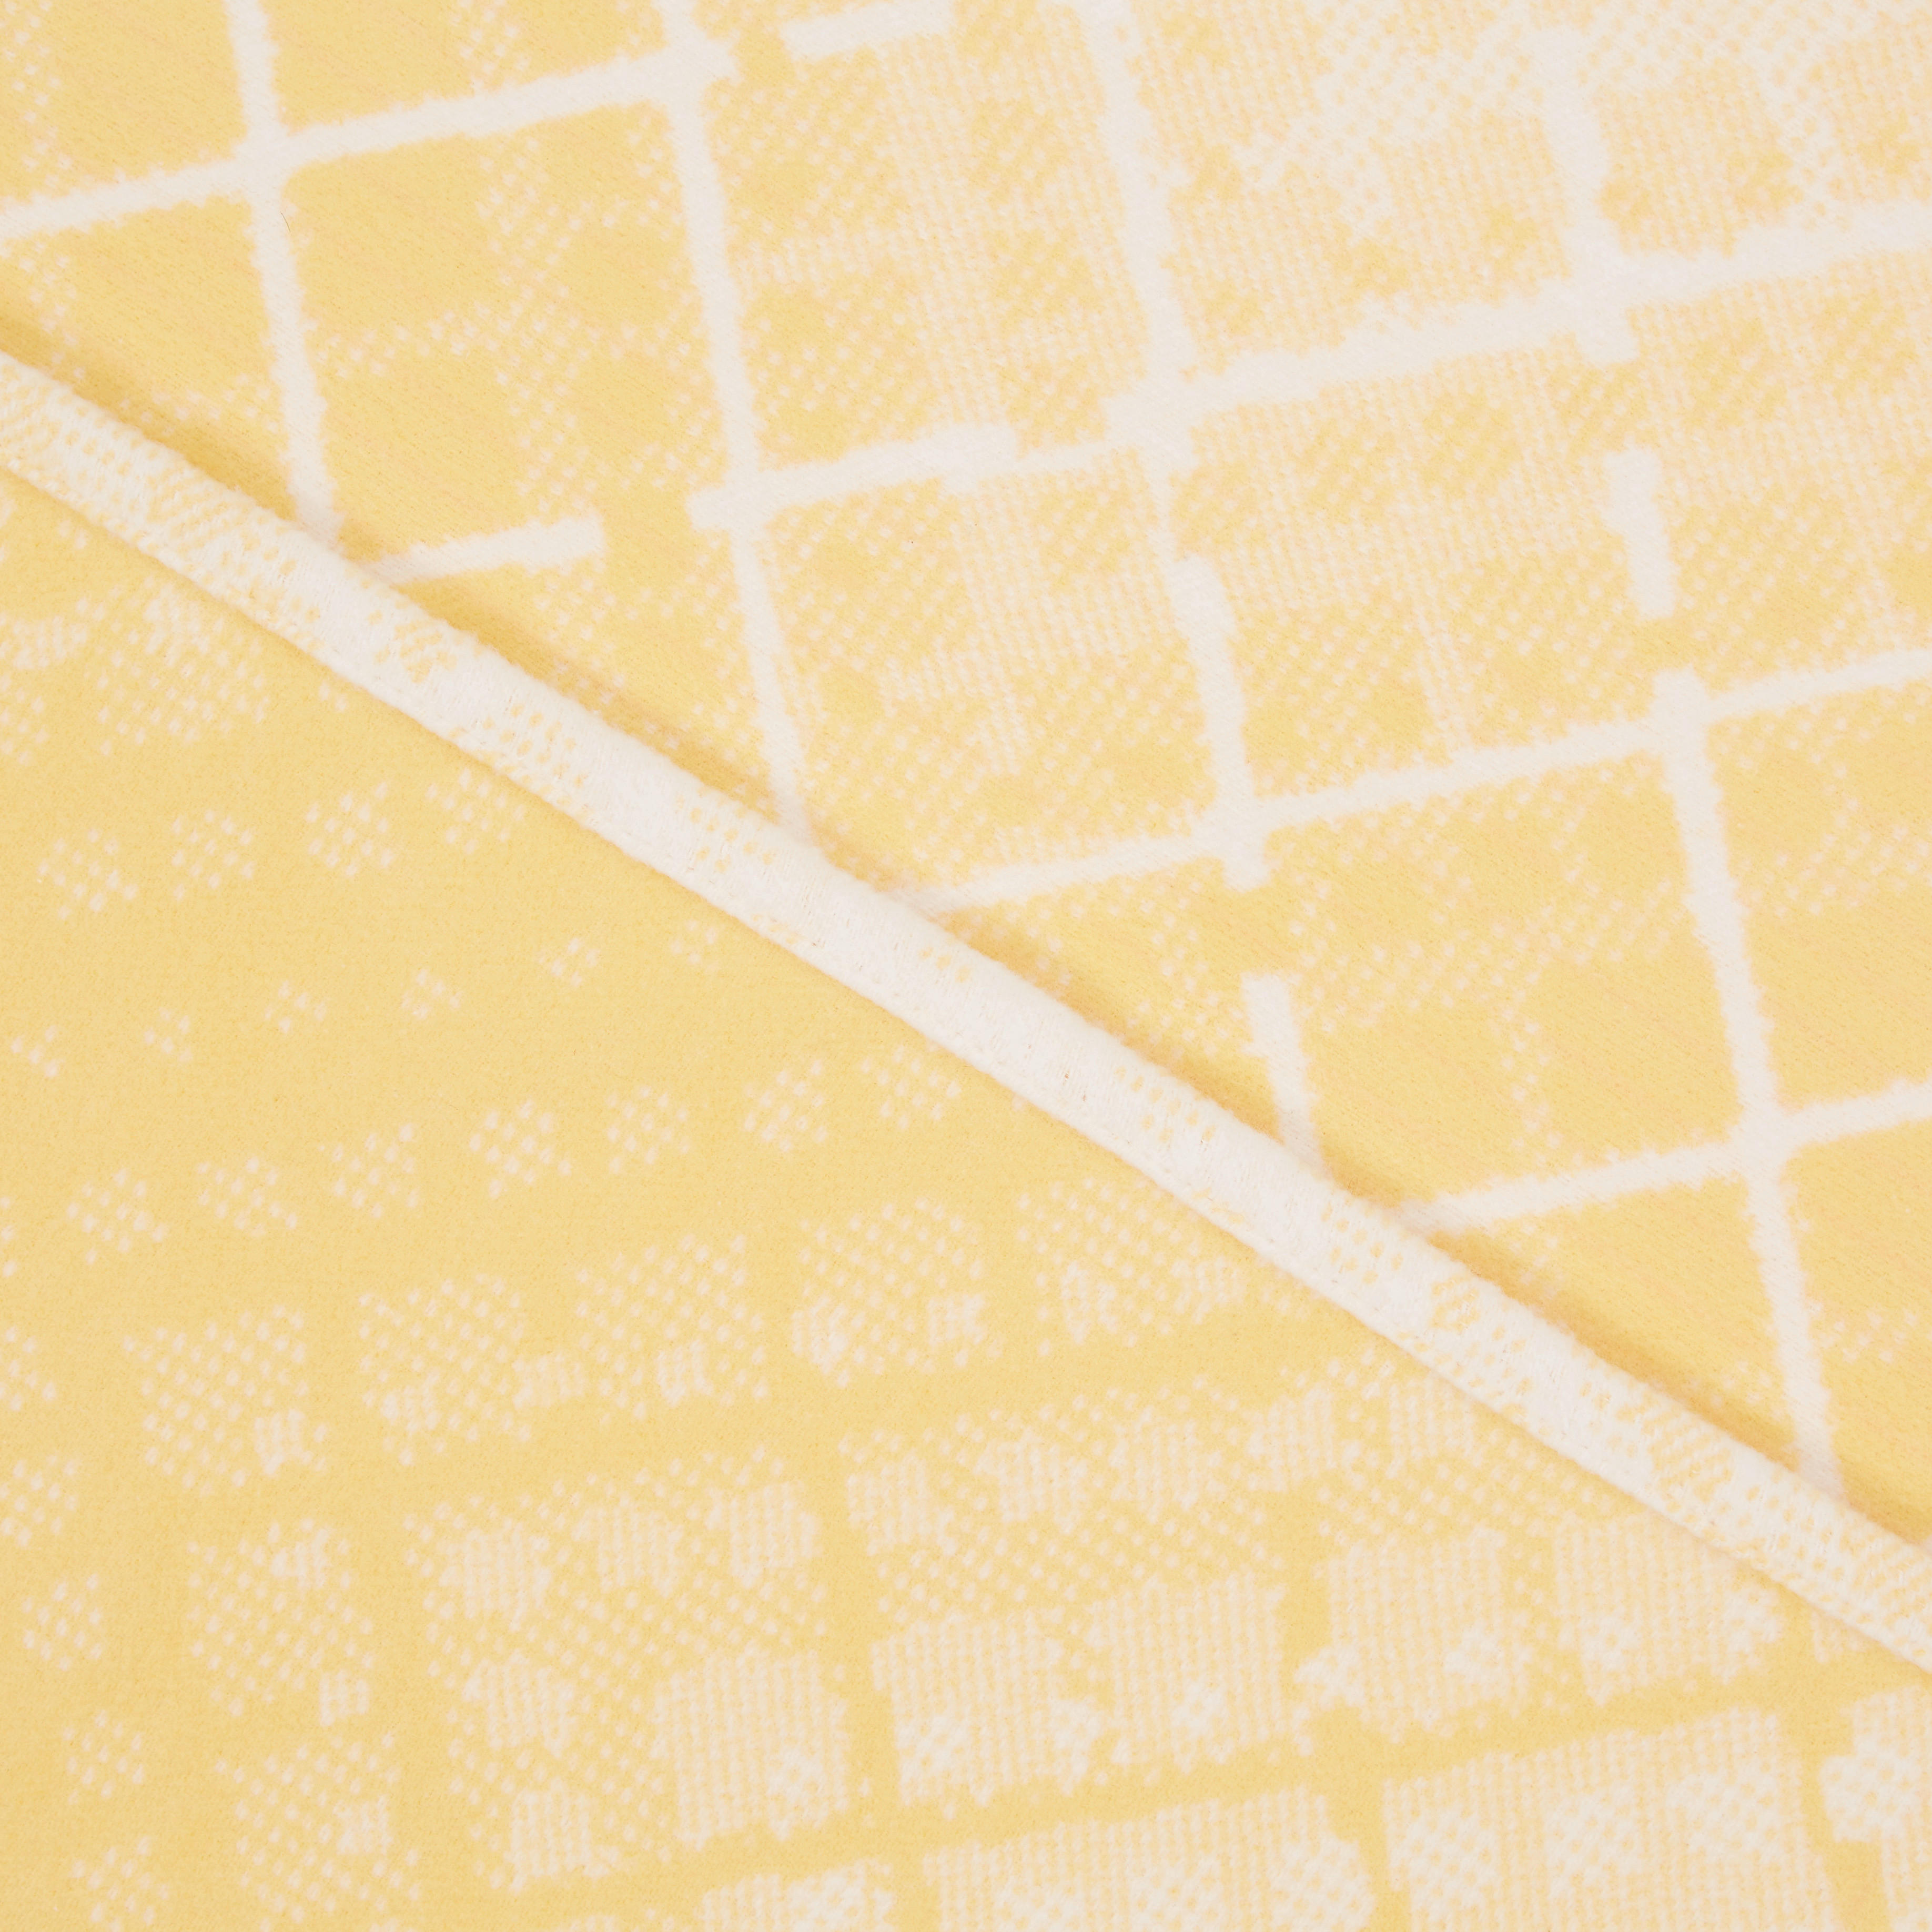 DEKA 140/200 cm  - bijela/žuta, Basics, tekstil (140/200cm) - Bio:Vio